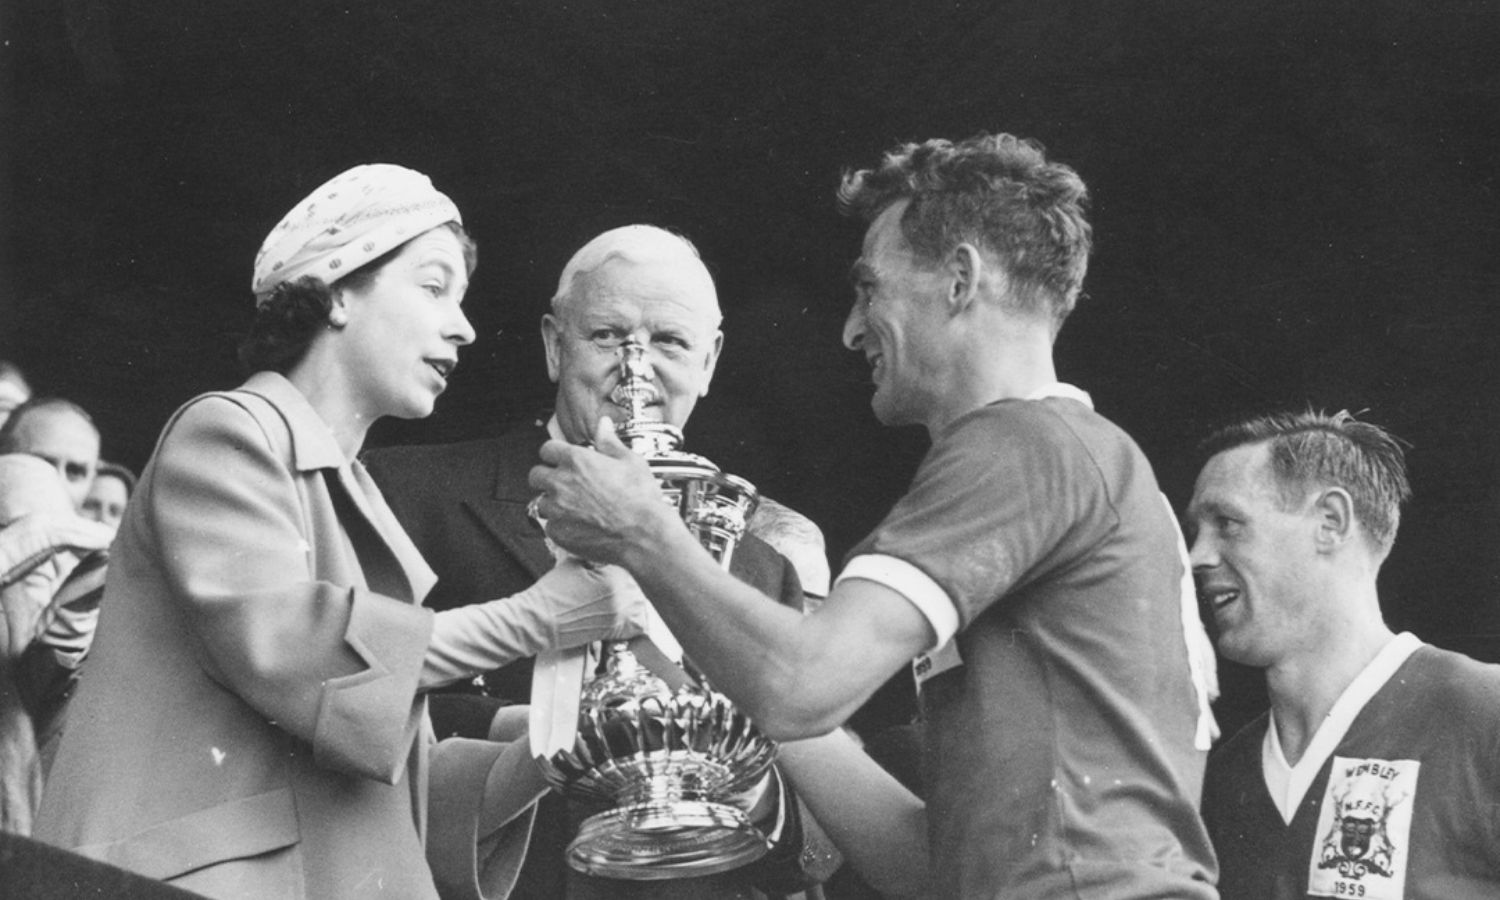 الملكة إليزابيث الثانية تقدم كأس الاتحاد الإنجليزي إلى قائد نادي نوتنجهام فورست لكرة القدم، جاك بوركيت، بعد فوز فريقه على لوتون تاون 2-1 في نهائي كأس الاتحاد الإنجليزي على ملعب ويمبلي بلندن- 2 من أيار 1959 (Paul Popper/ Getty Images)